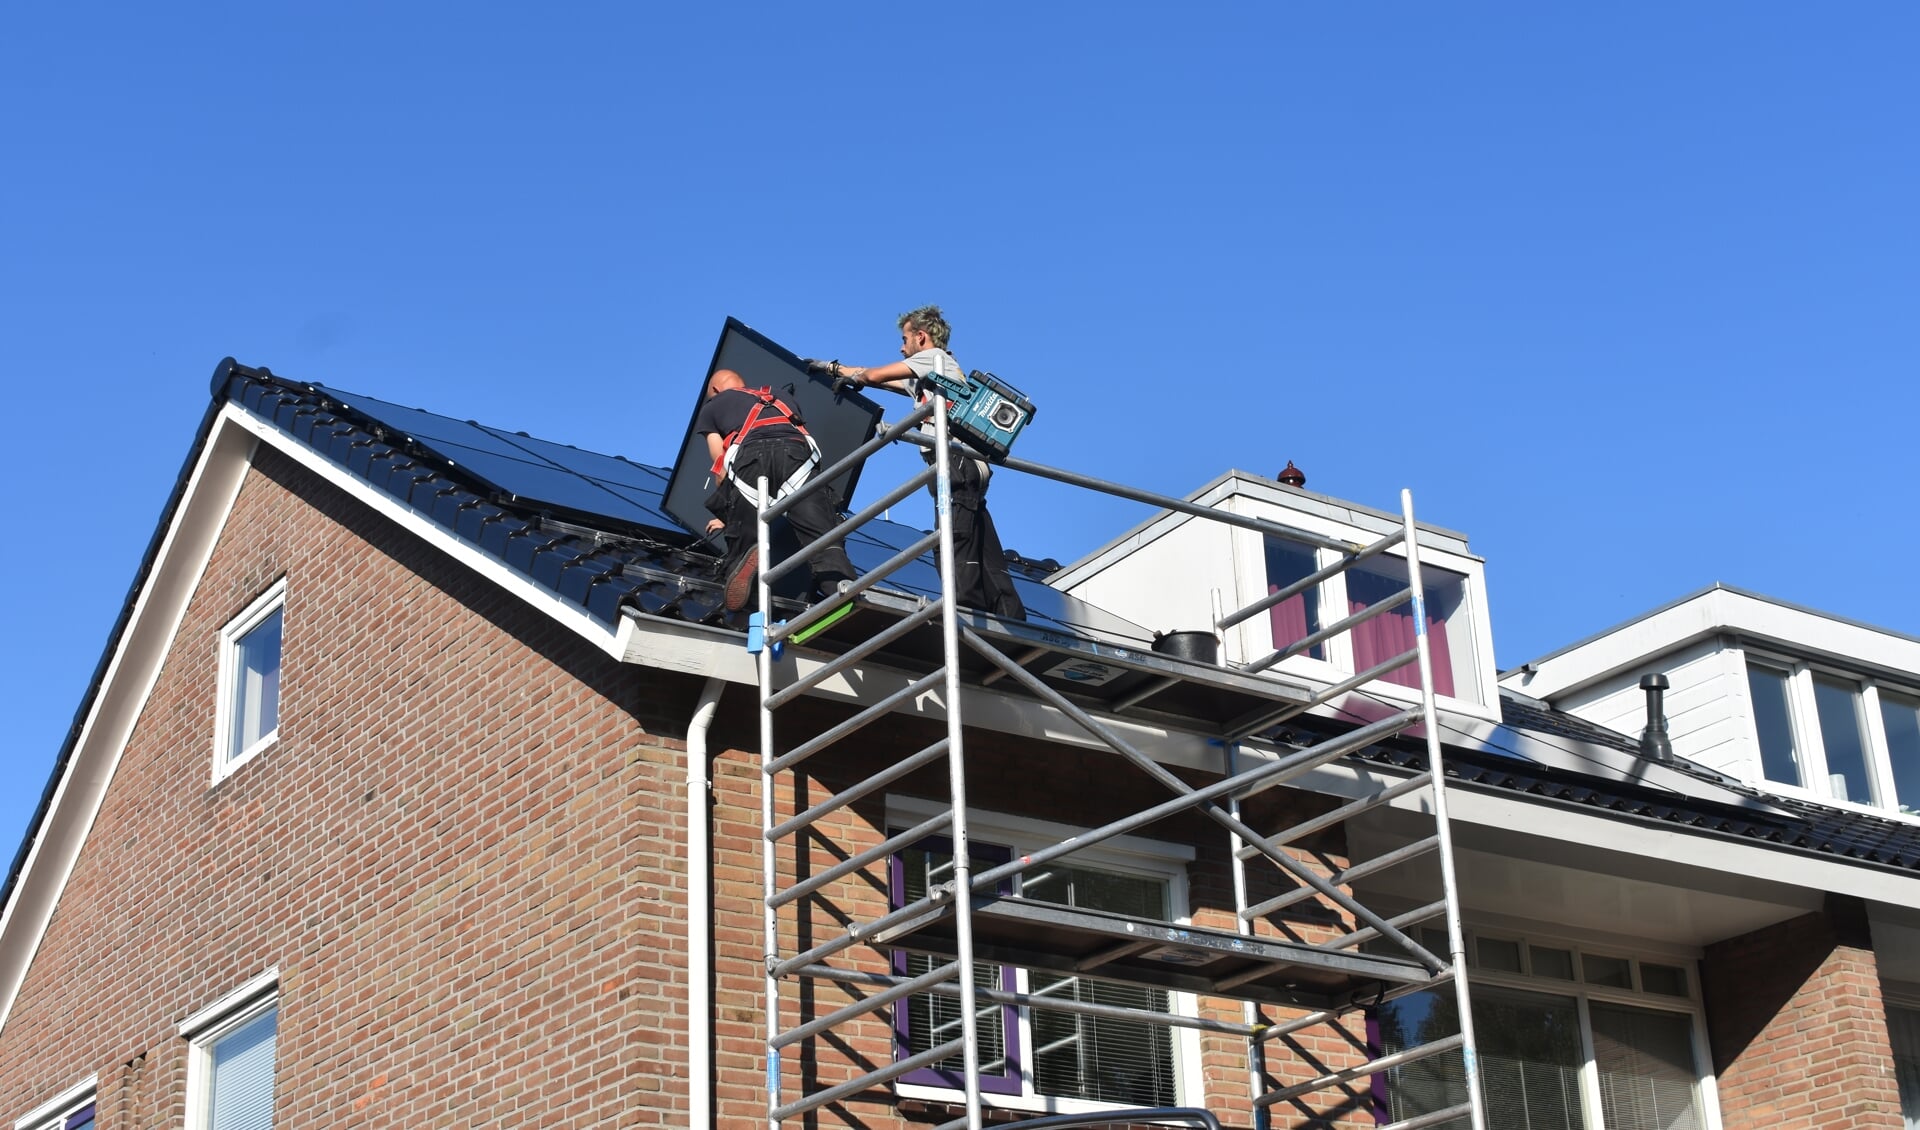 Medewerkers van Solar-Systemen.nl in Drachten leggen twintig zonnepanelen op het dak van een woning aan de Gauke Boelensstraat in Drachten. Het is één van de manieren om het reguliere stroomverbruik flink te beperken.